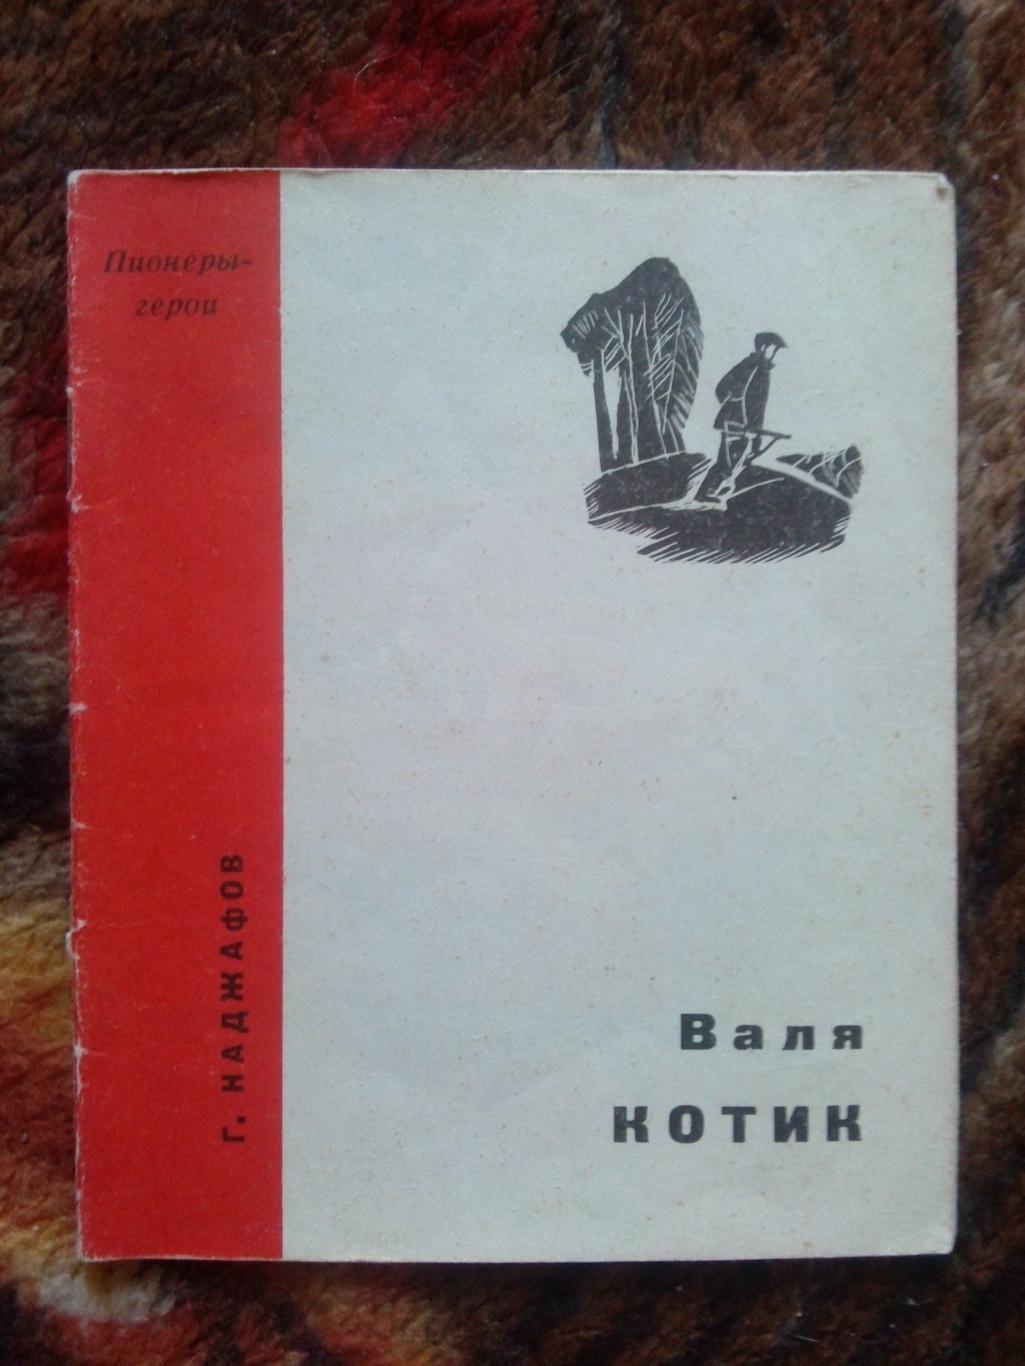 Пионеры-герои (Плакат + брошюра) 1967 г. Валя Котик (Пионер , агитация) 3